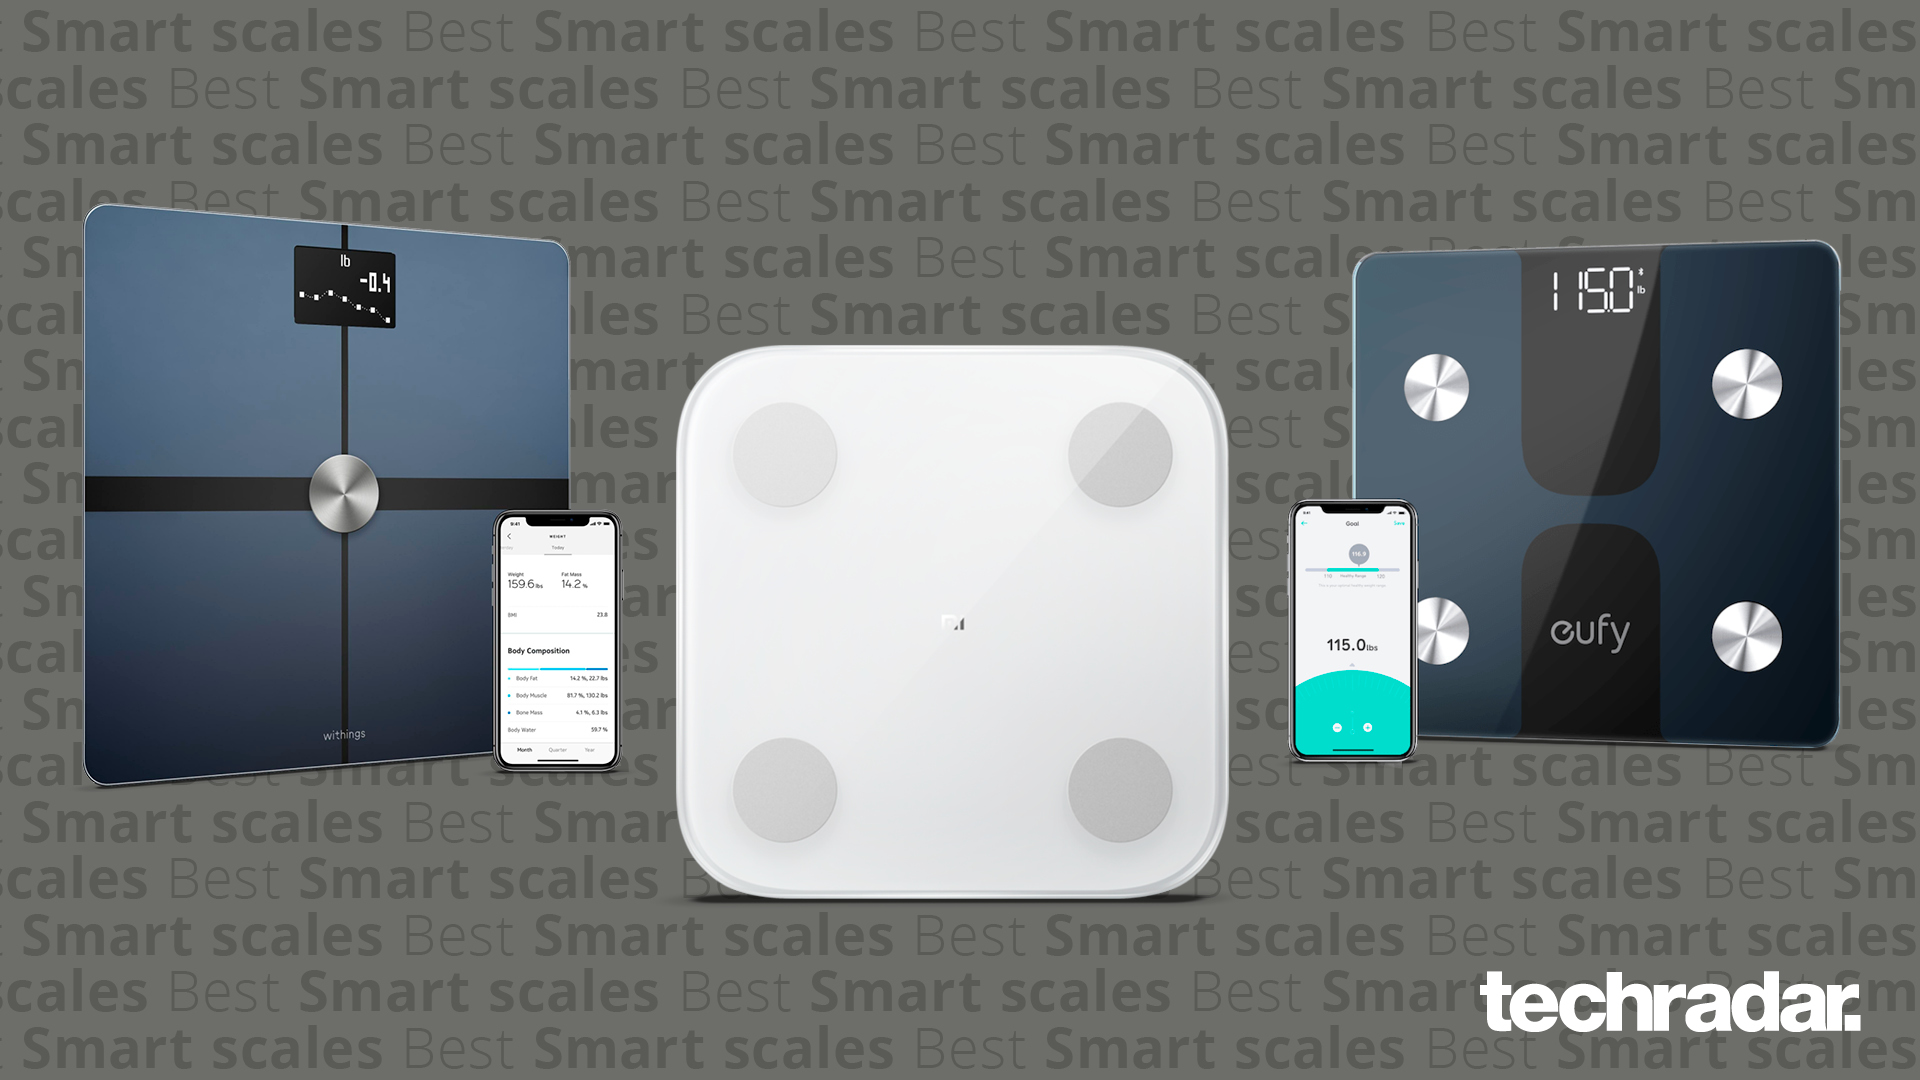 Xiaomi Smart Scale 2 Батарейки